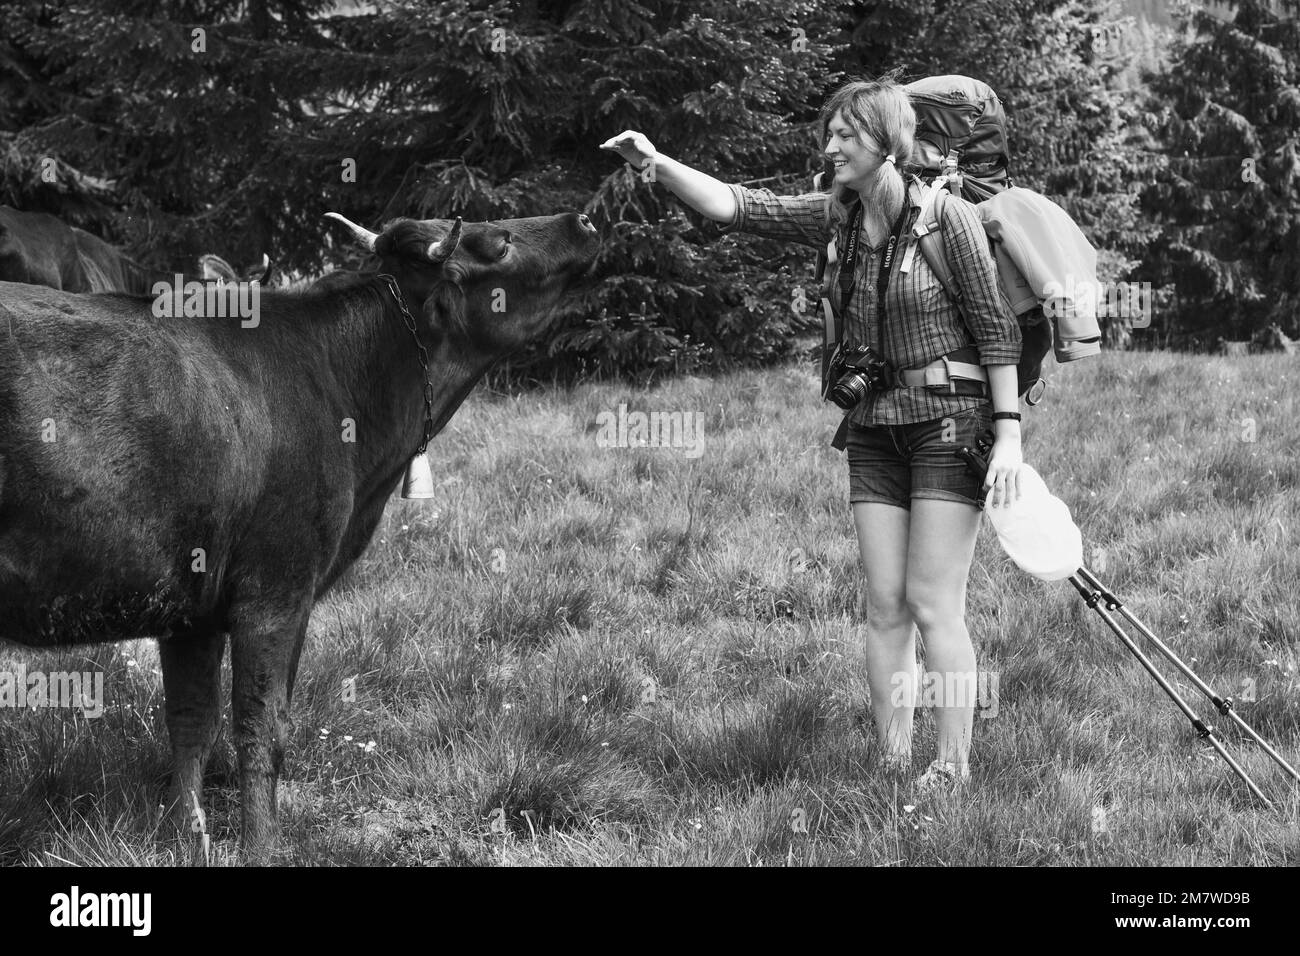 Joyeux touriste essayant de toucher la photographie de vache monochrome pittoresque Banque D'Images